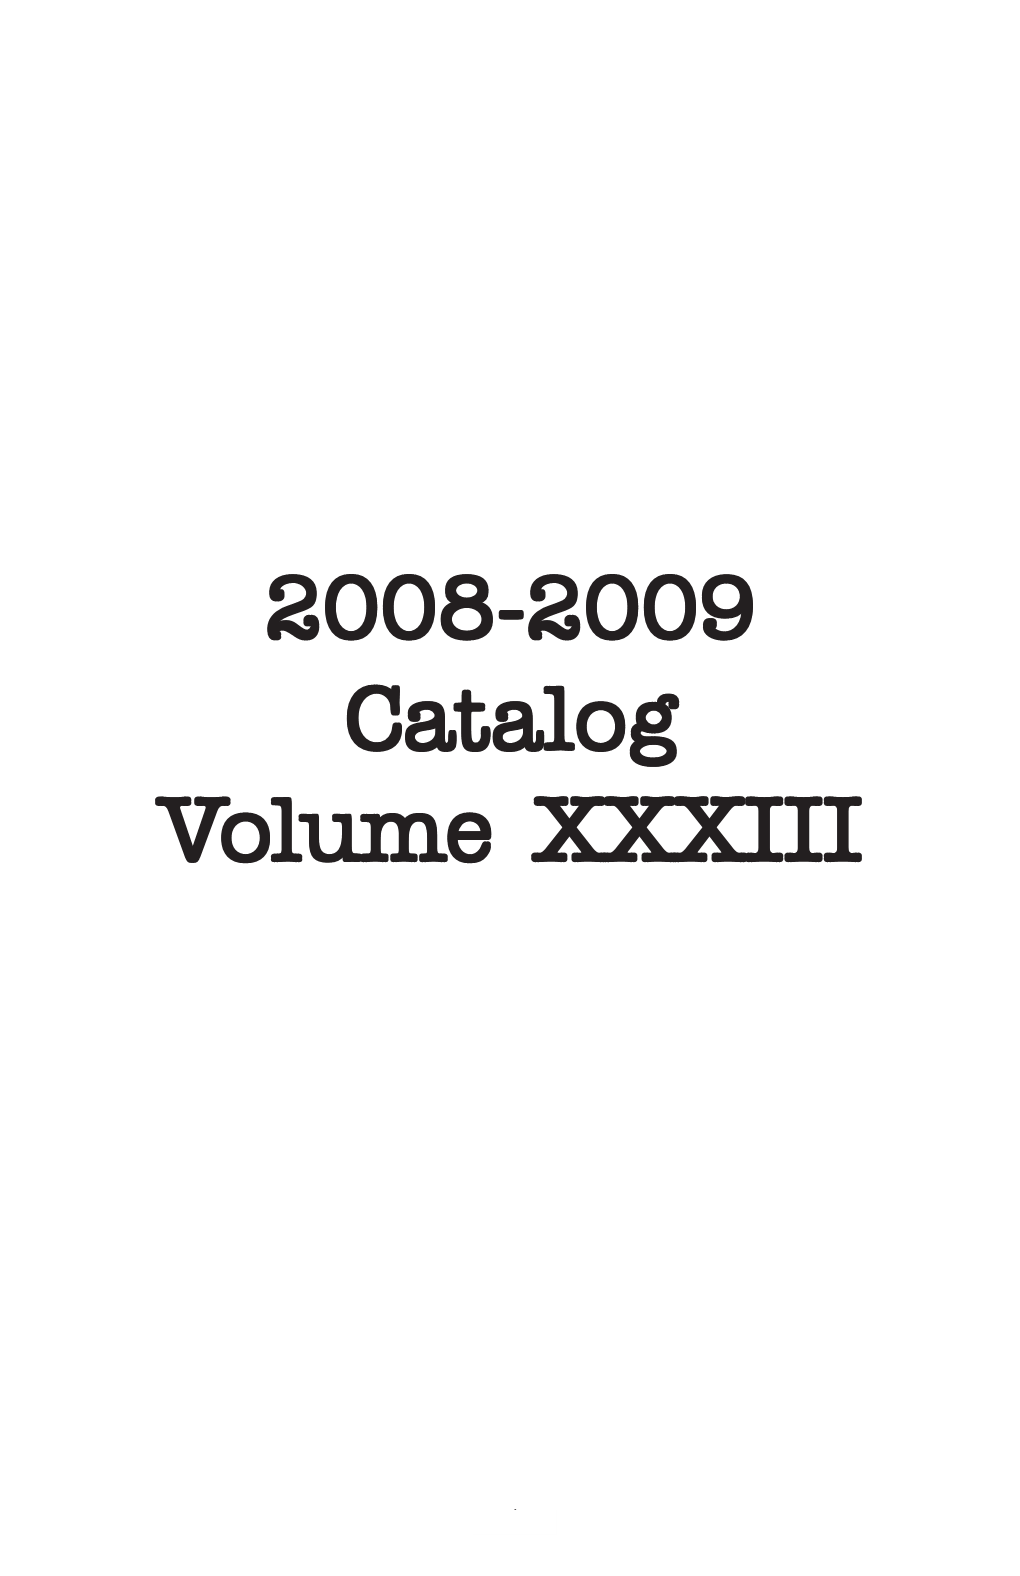 2008-2009 Catalog Volume XXXIII Olume XXXIII